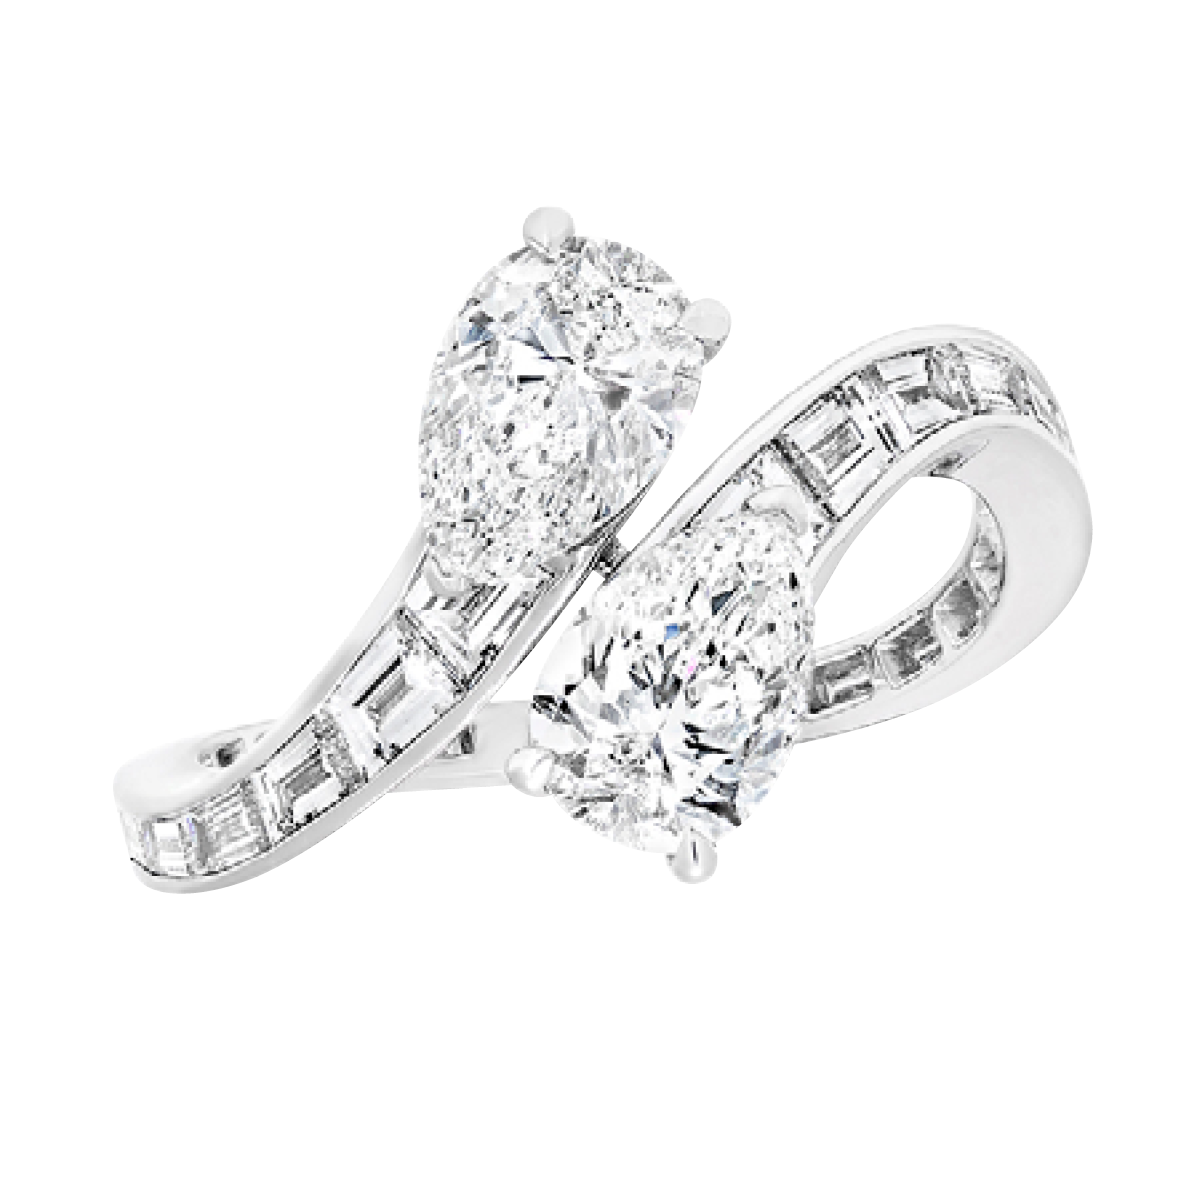 2022年の婚約指輪トレンドは2つの宝石がセットされた「トワ・エ・モワ